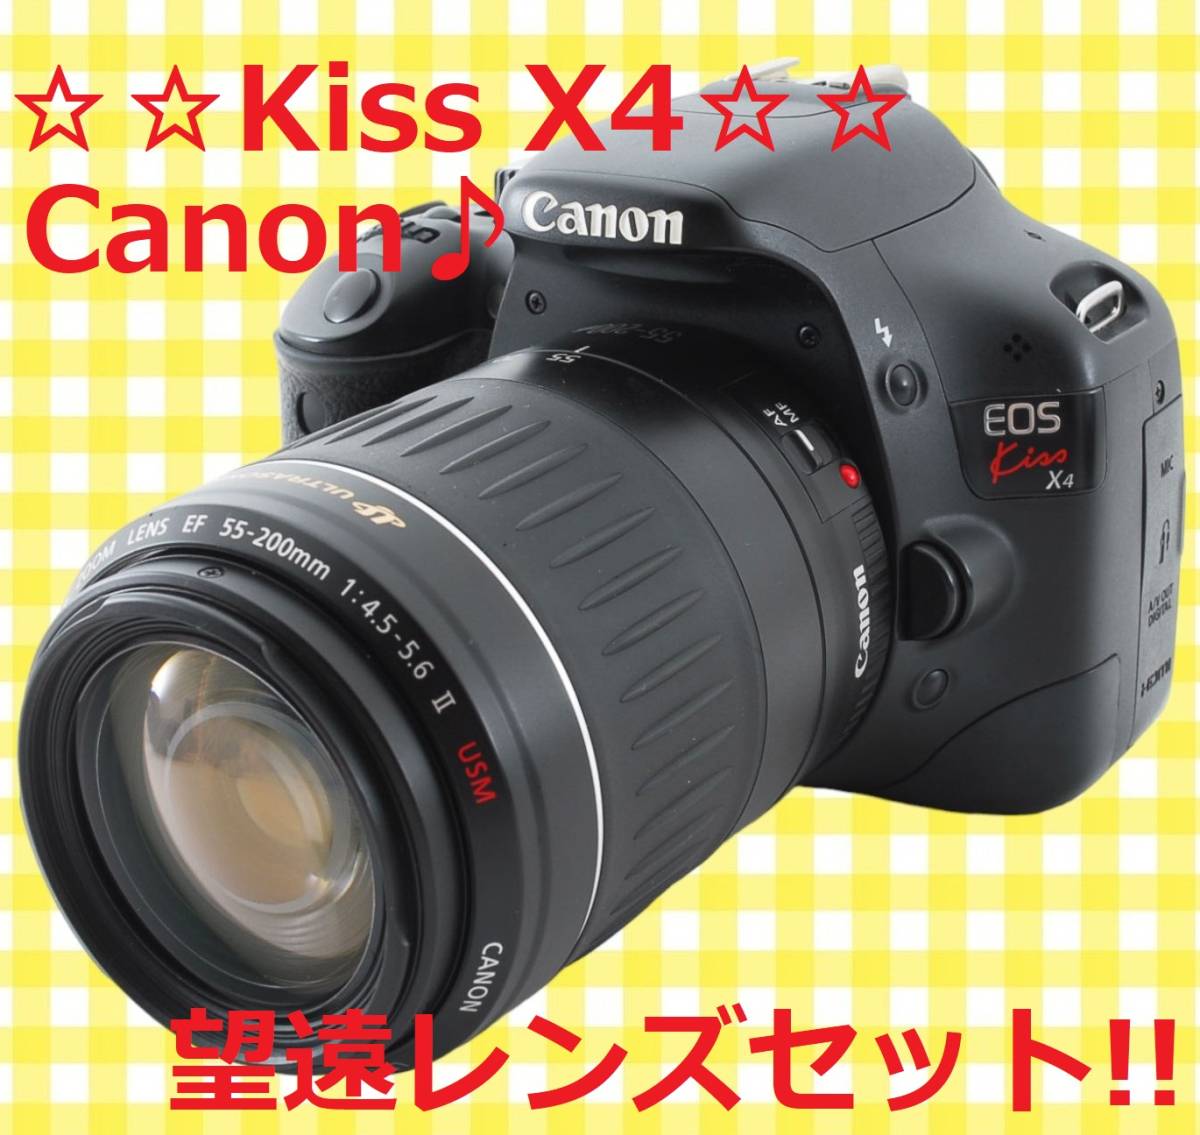 美品♪ ☆ハイスペック機種☆ CANON キャノン Kiss X4 #5841